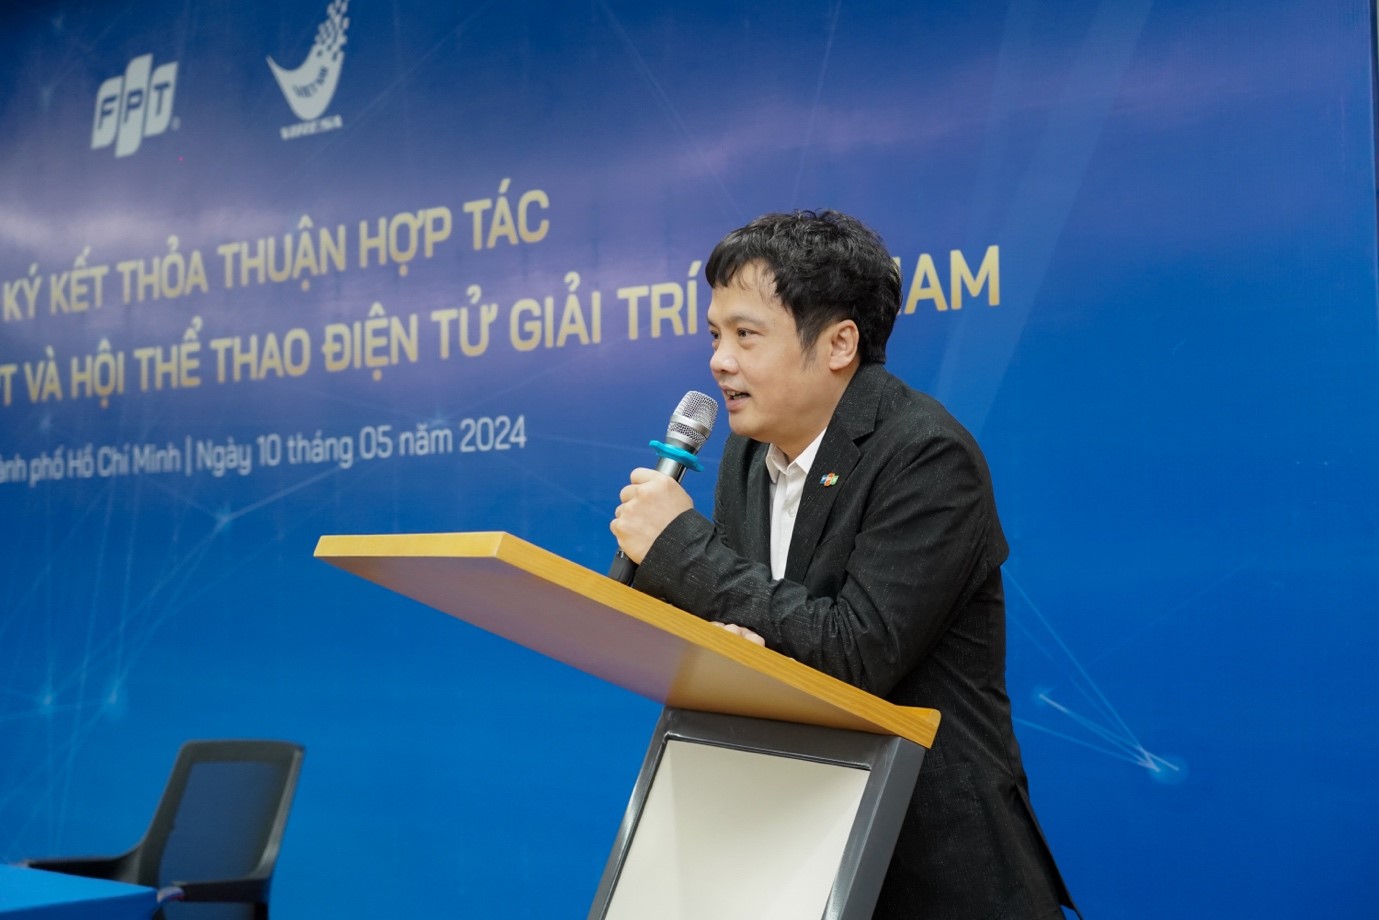 Tổng Giám đốc Tập đoàn FPT ông Nguyễn Văn Khoa bày tỏ cam kết